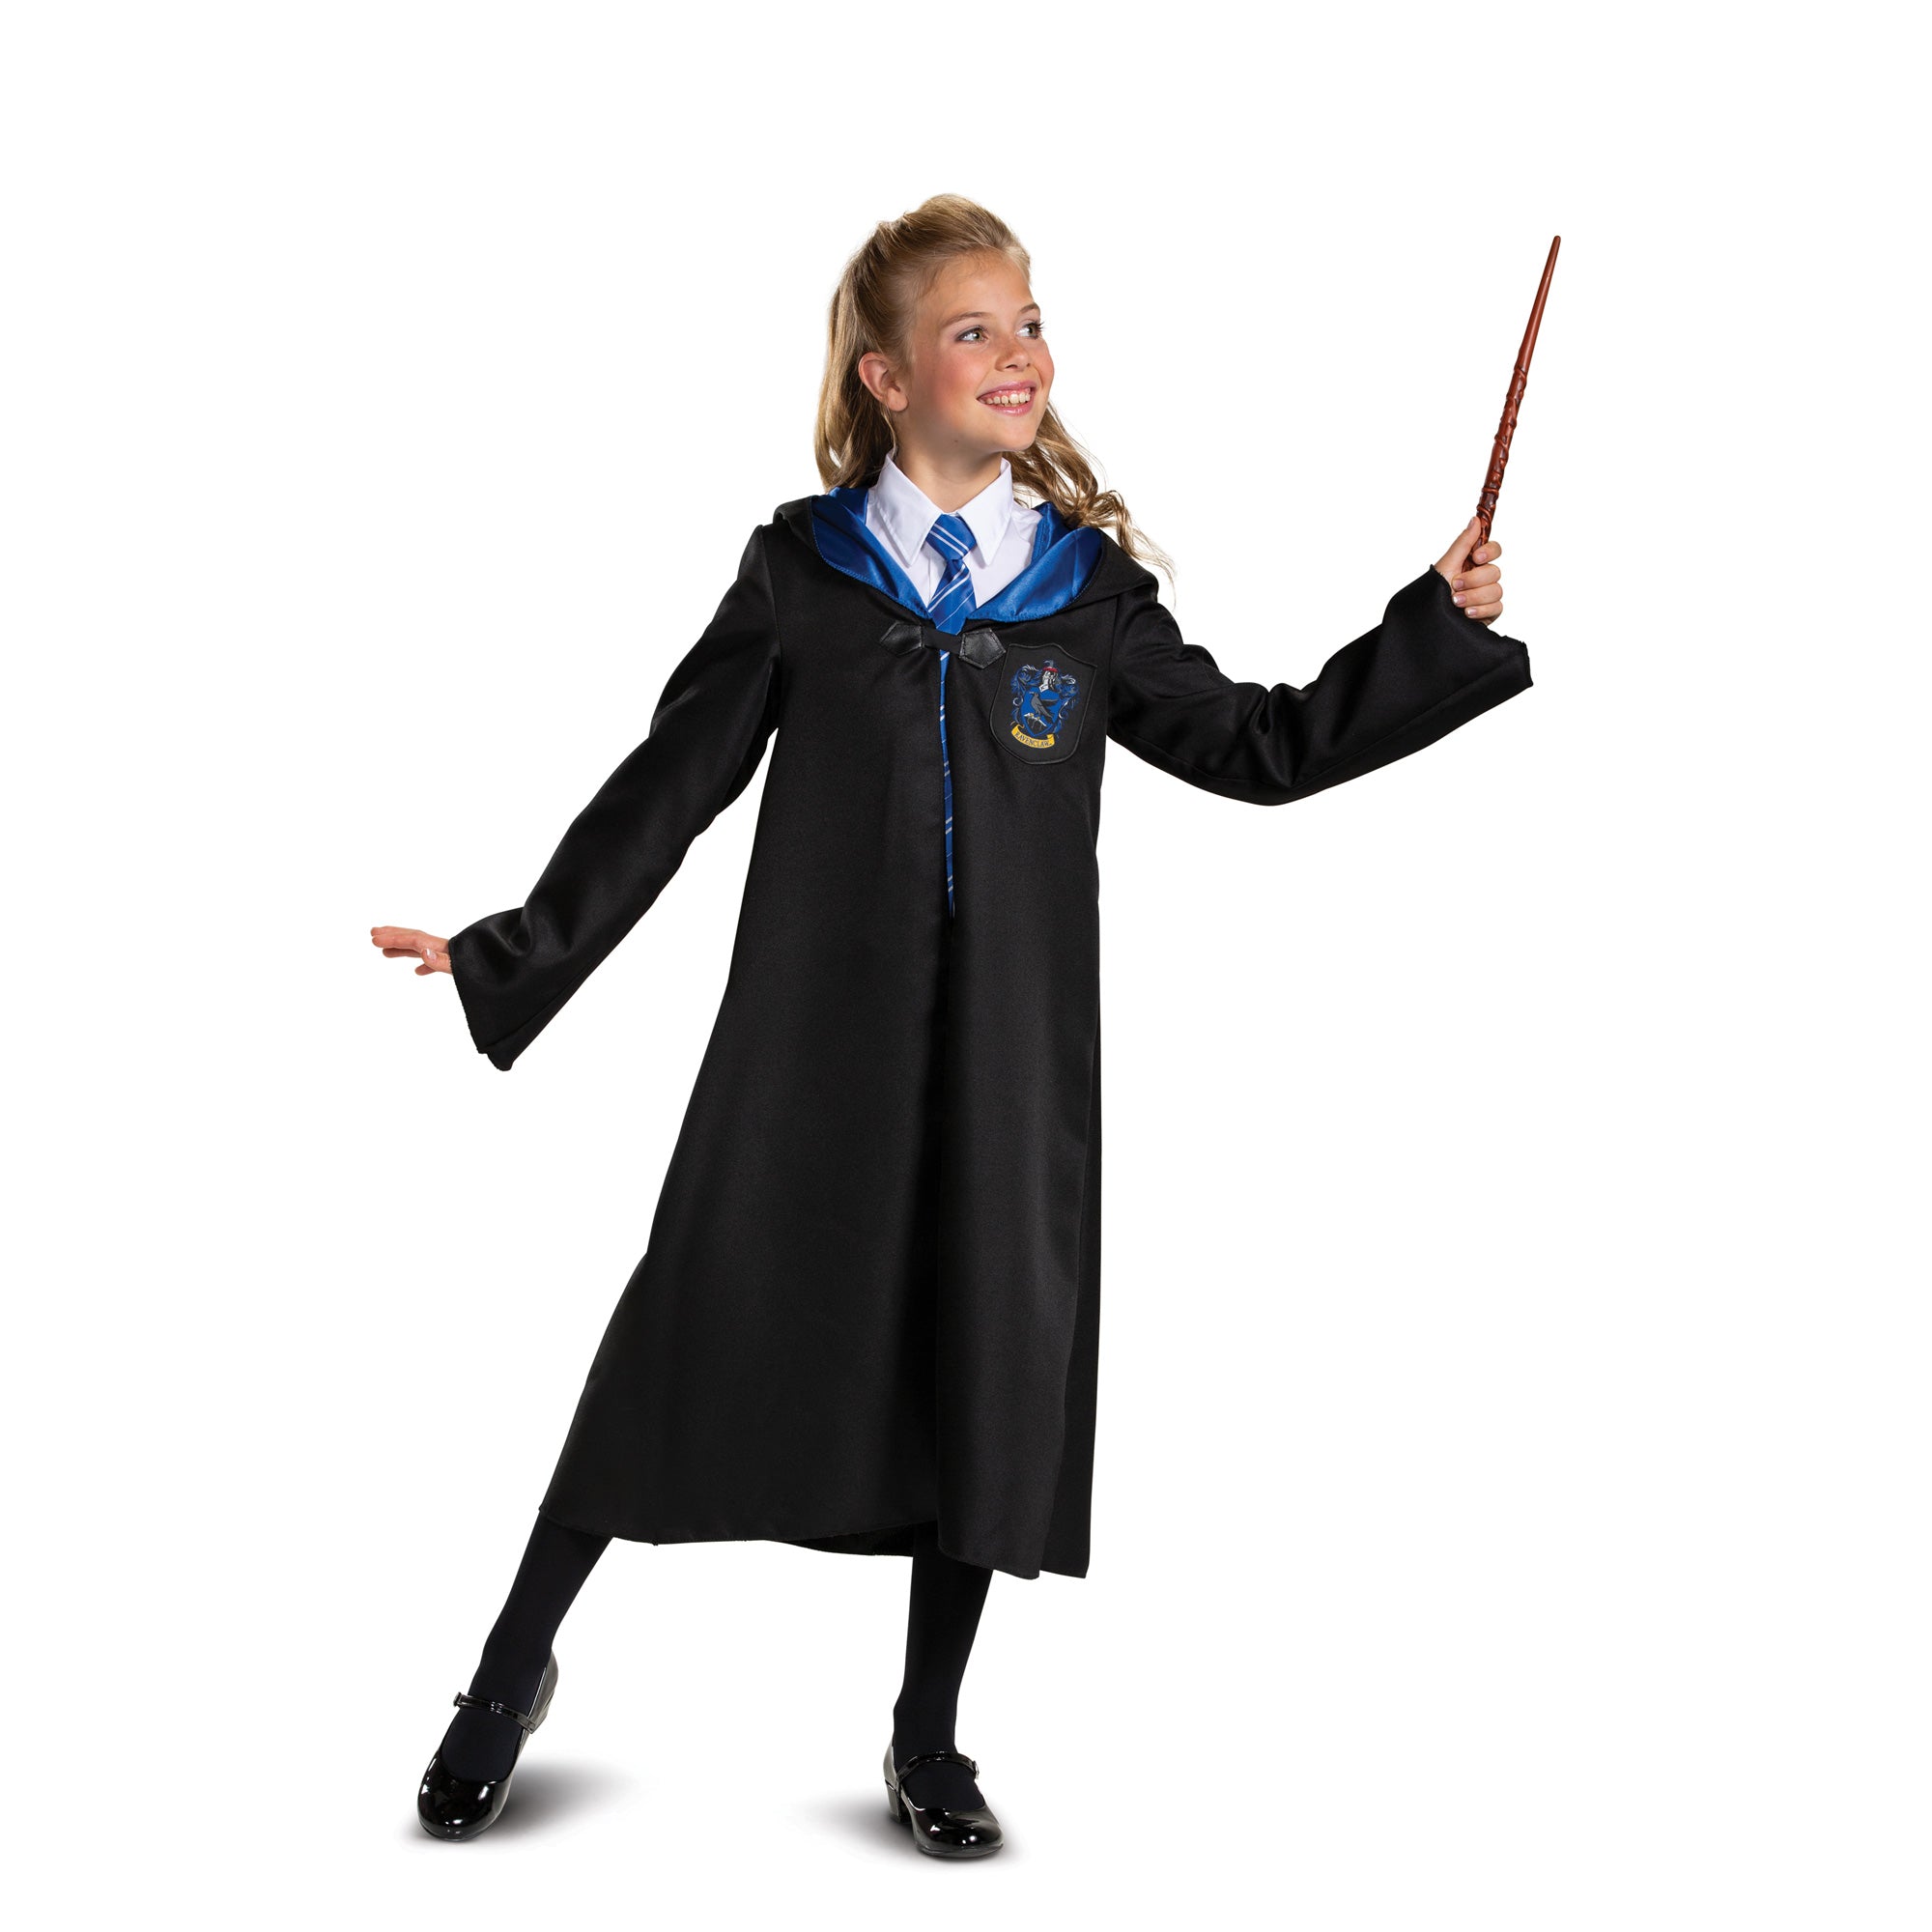 Costume Cosplay Harry Potter pour enfants, robe magique, cape